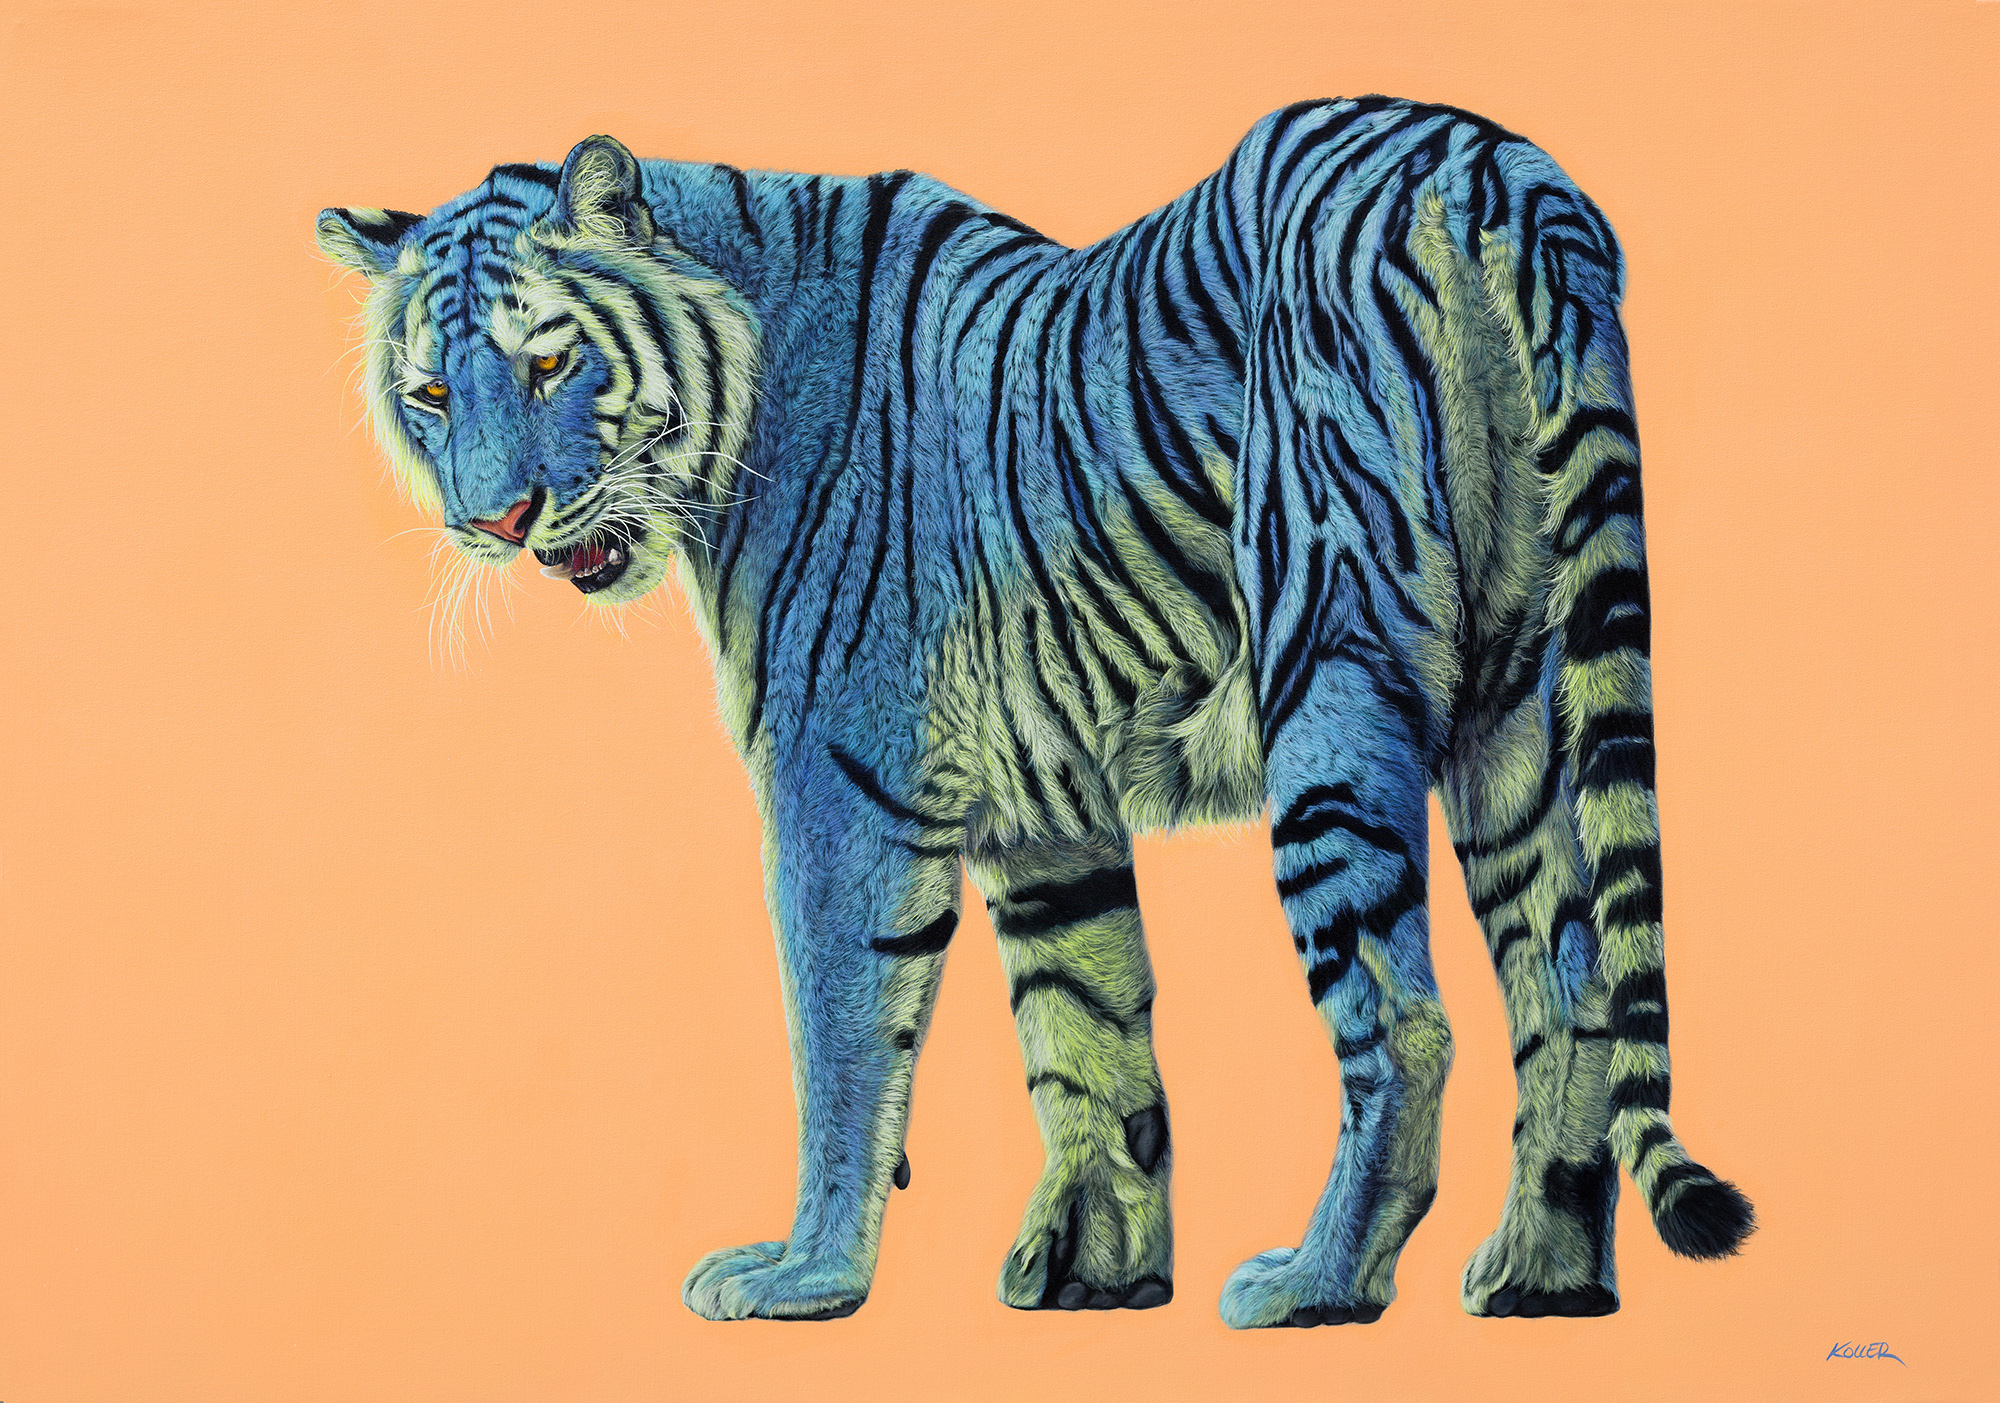 Helmut Koller, Blue and Green Tiger on Light Orange